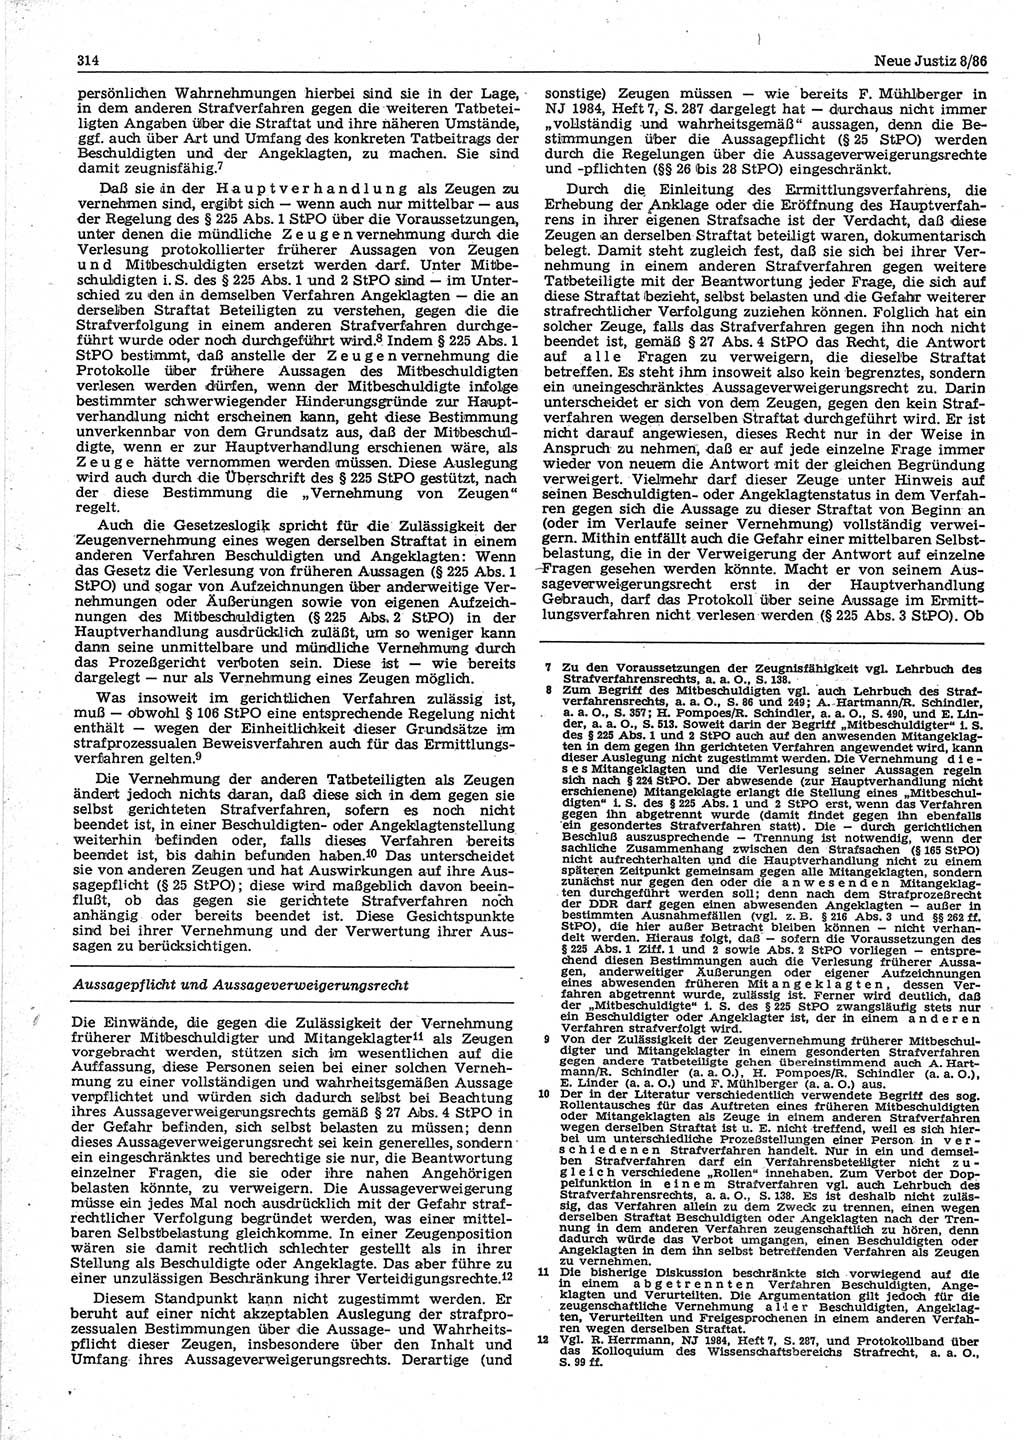 Neue Justiz (NJ), Zeitschrift für sozialistisches Recht und Gesetzlichkeit [Deutsche Demokratische Republik (DDR)], 40. Jahrgang 1986, Seite 314 (NJ DDR 1986, S. 314)